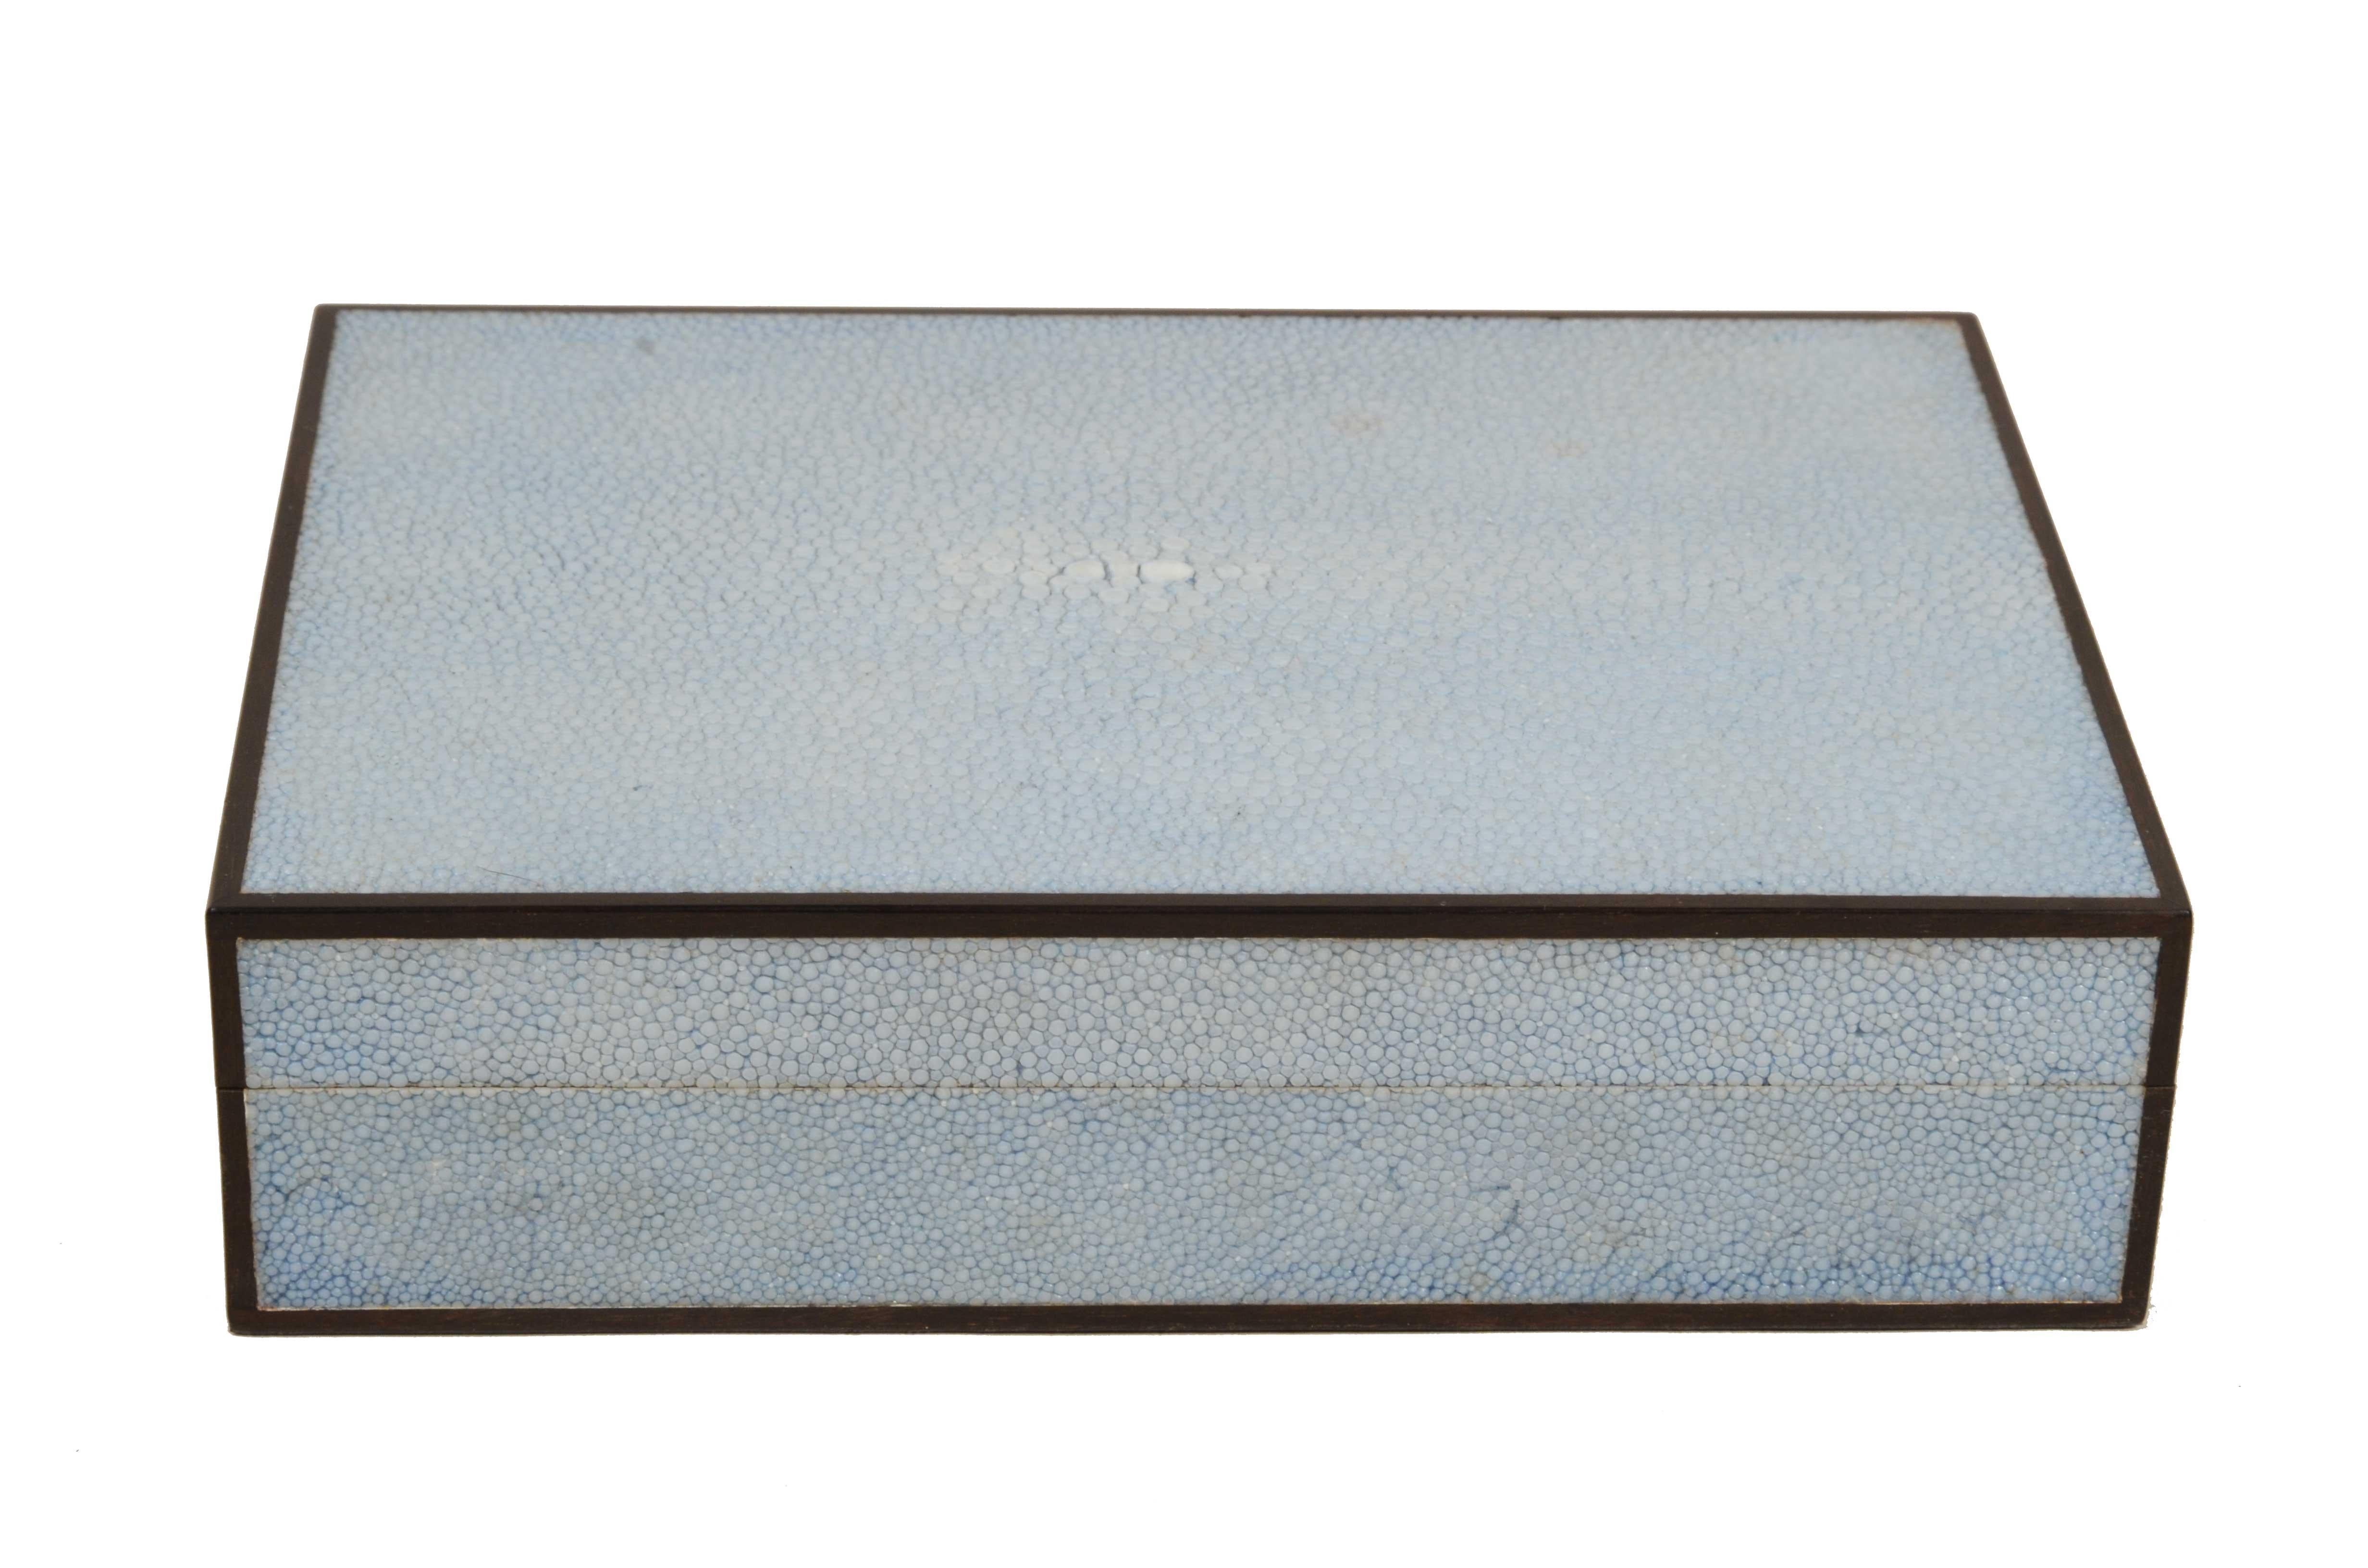 Kleine Zigarrenkiste  aus Teakholz mit Galuchat-Bezug und Seitenprofilen aus Ebenholz, hergestellt in den 1970er Jahren.
Sockel aus Teakholz, meisterhaft furniert mit Galuchat, Pedigree-Leder  hellblaue Farbe mit glänzender Oberfläche und